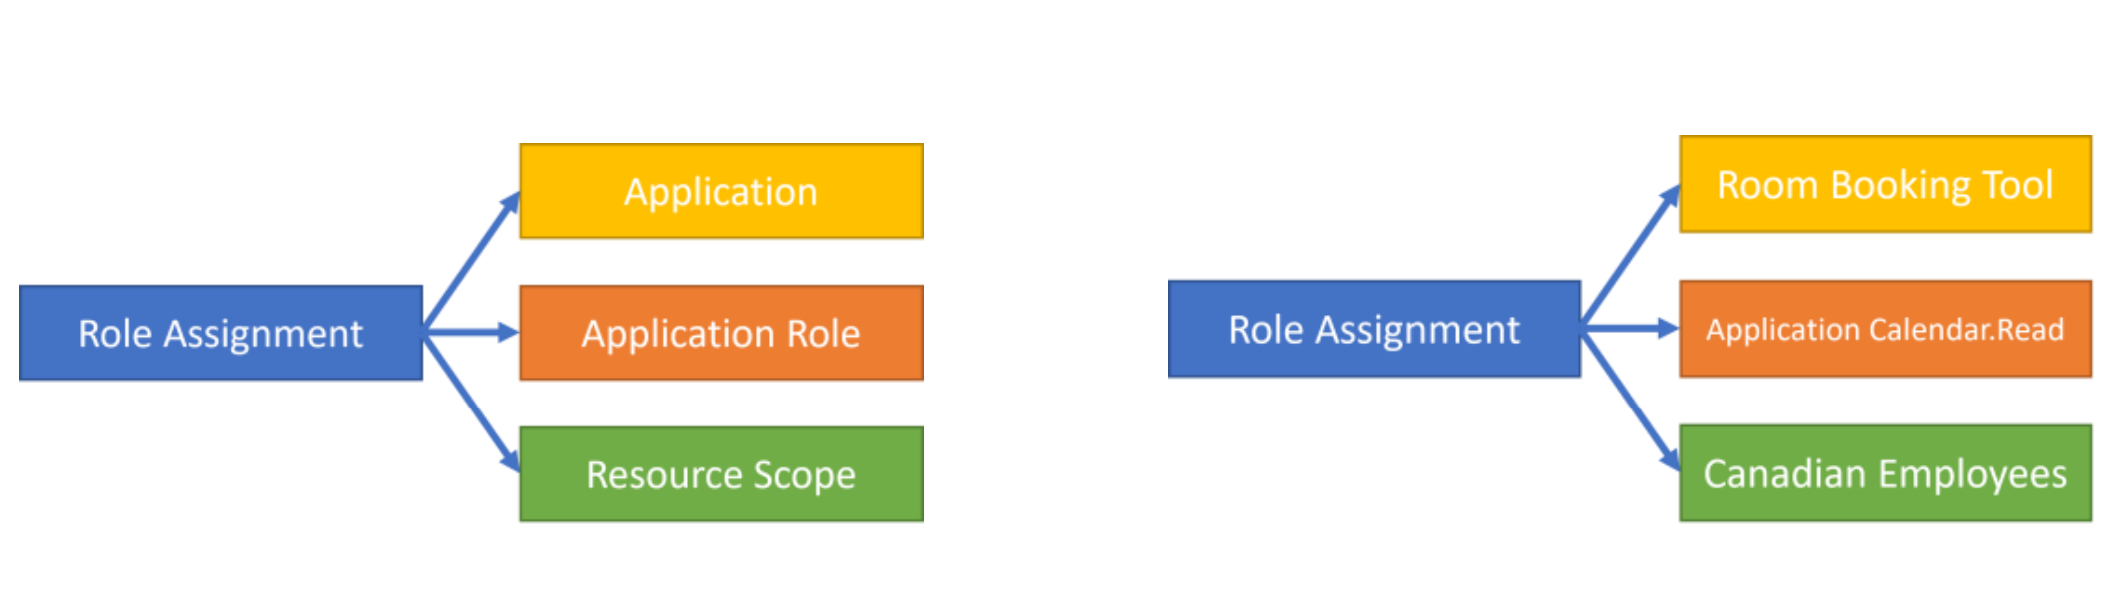 Diagrama del modelo de asignación de roles con ejemplo.